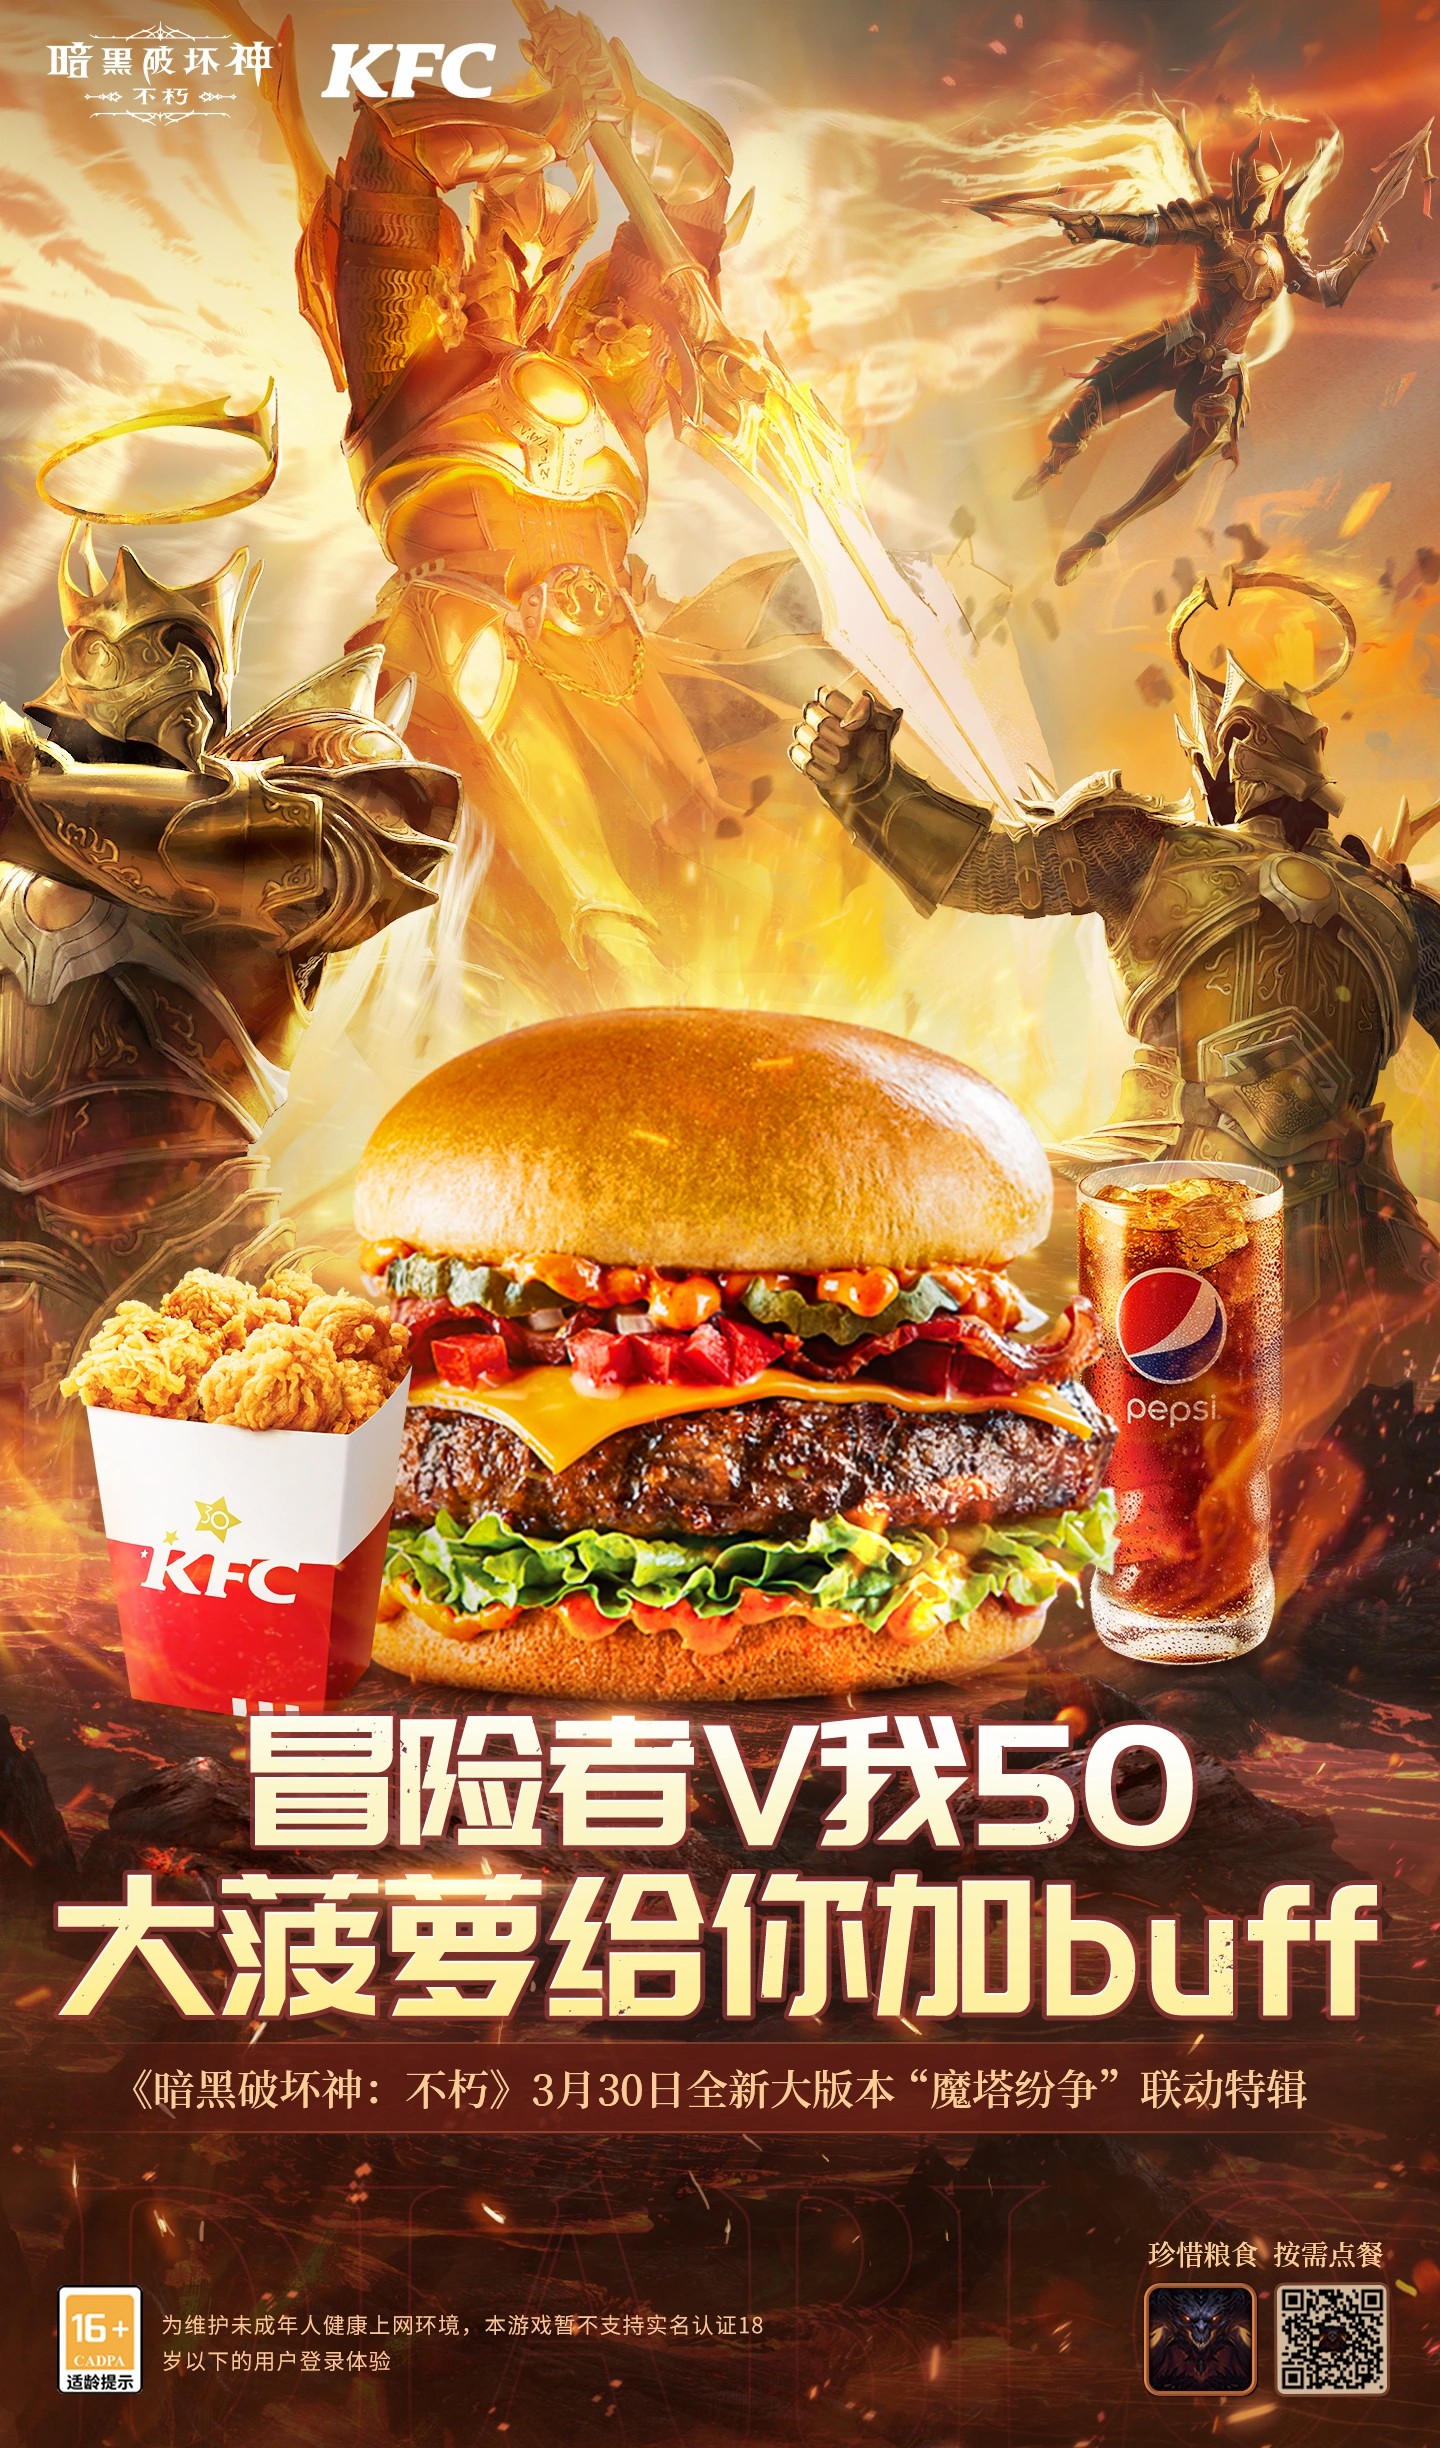 KFC 奥k1体育手机版下载特曼超酷玩具餐火热销售中。集结吧光之力量!